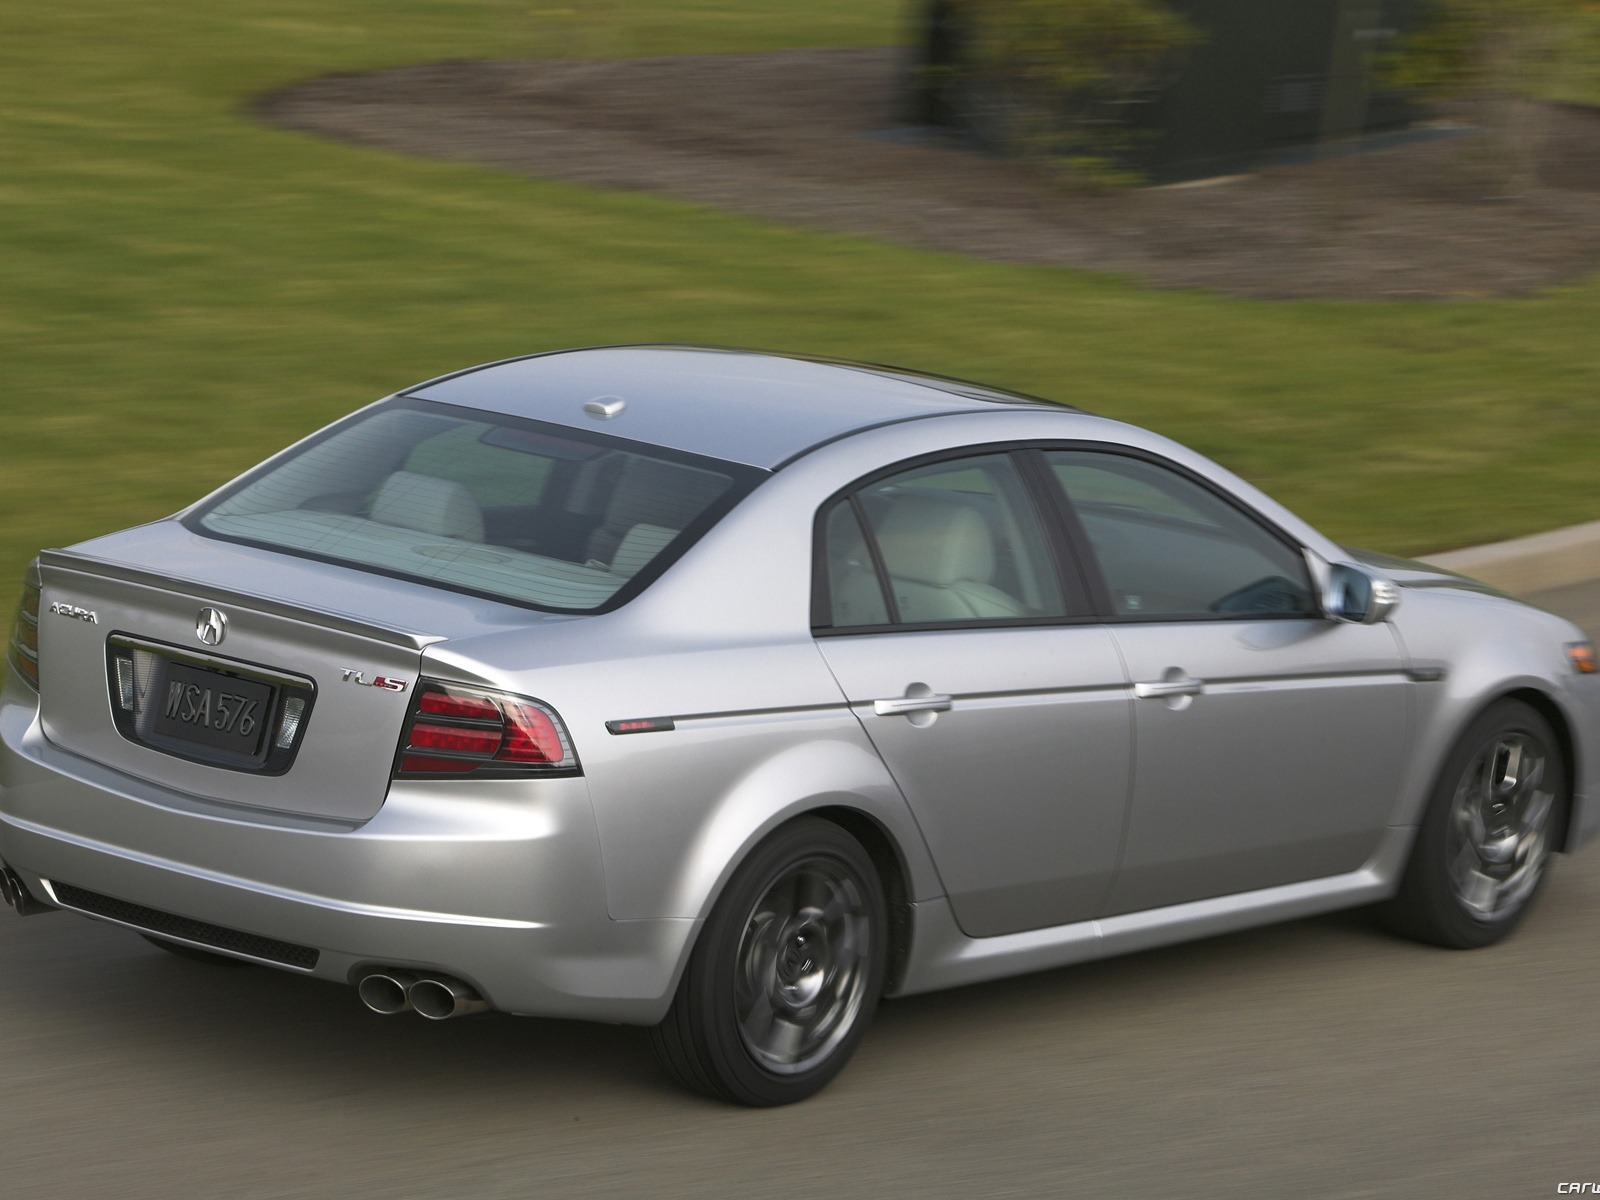 Acura TL Type S - 2008 讴歌36 - 1600x1200